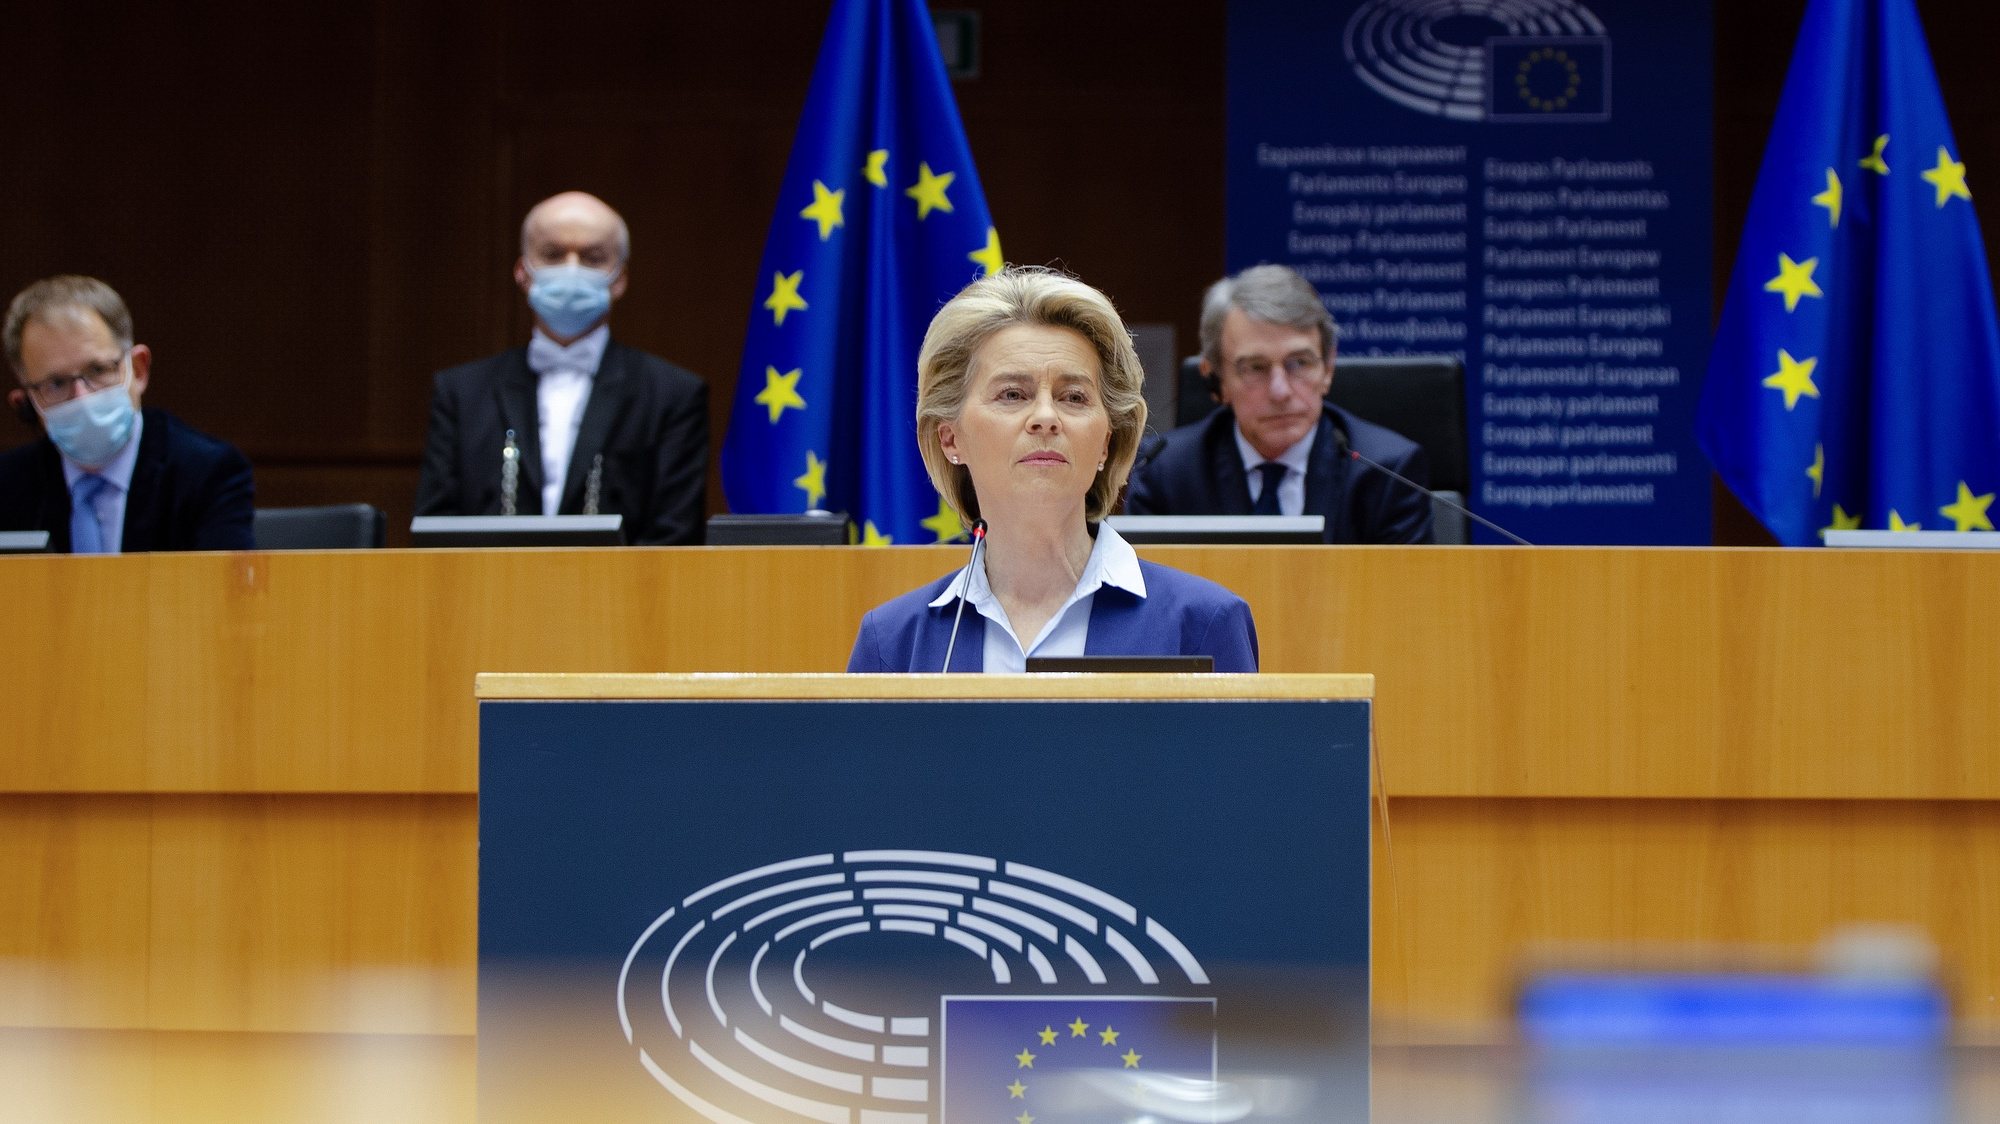 A presidente da Comissão Europeia, Ursula von der Leyen, intervém durante a cerimónia da assinatura de uma declaração conjunta sobre o Futuro da Europa, no Parlamento Europeu, em Bruxelas, Bélgica, 10 de Março de 2021. TONY DA SILVA/LUSA